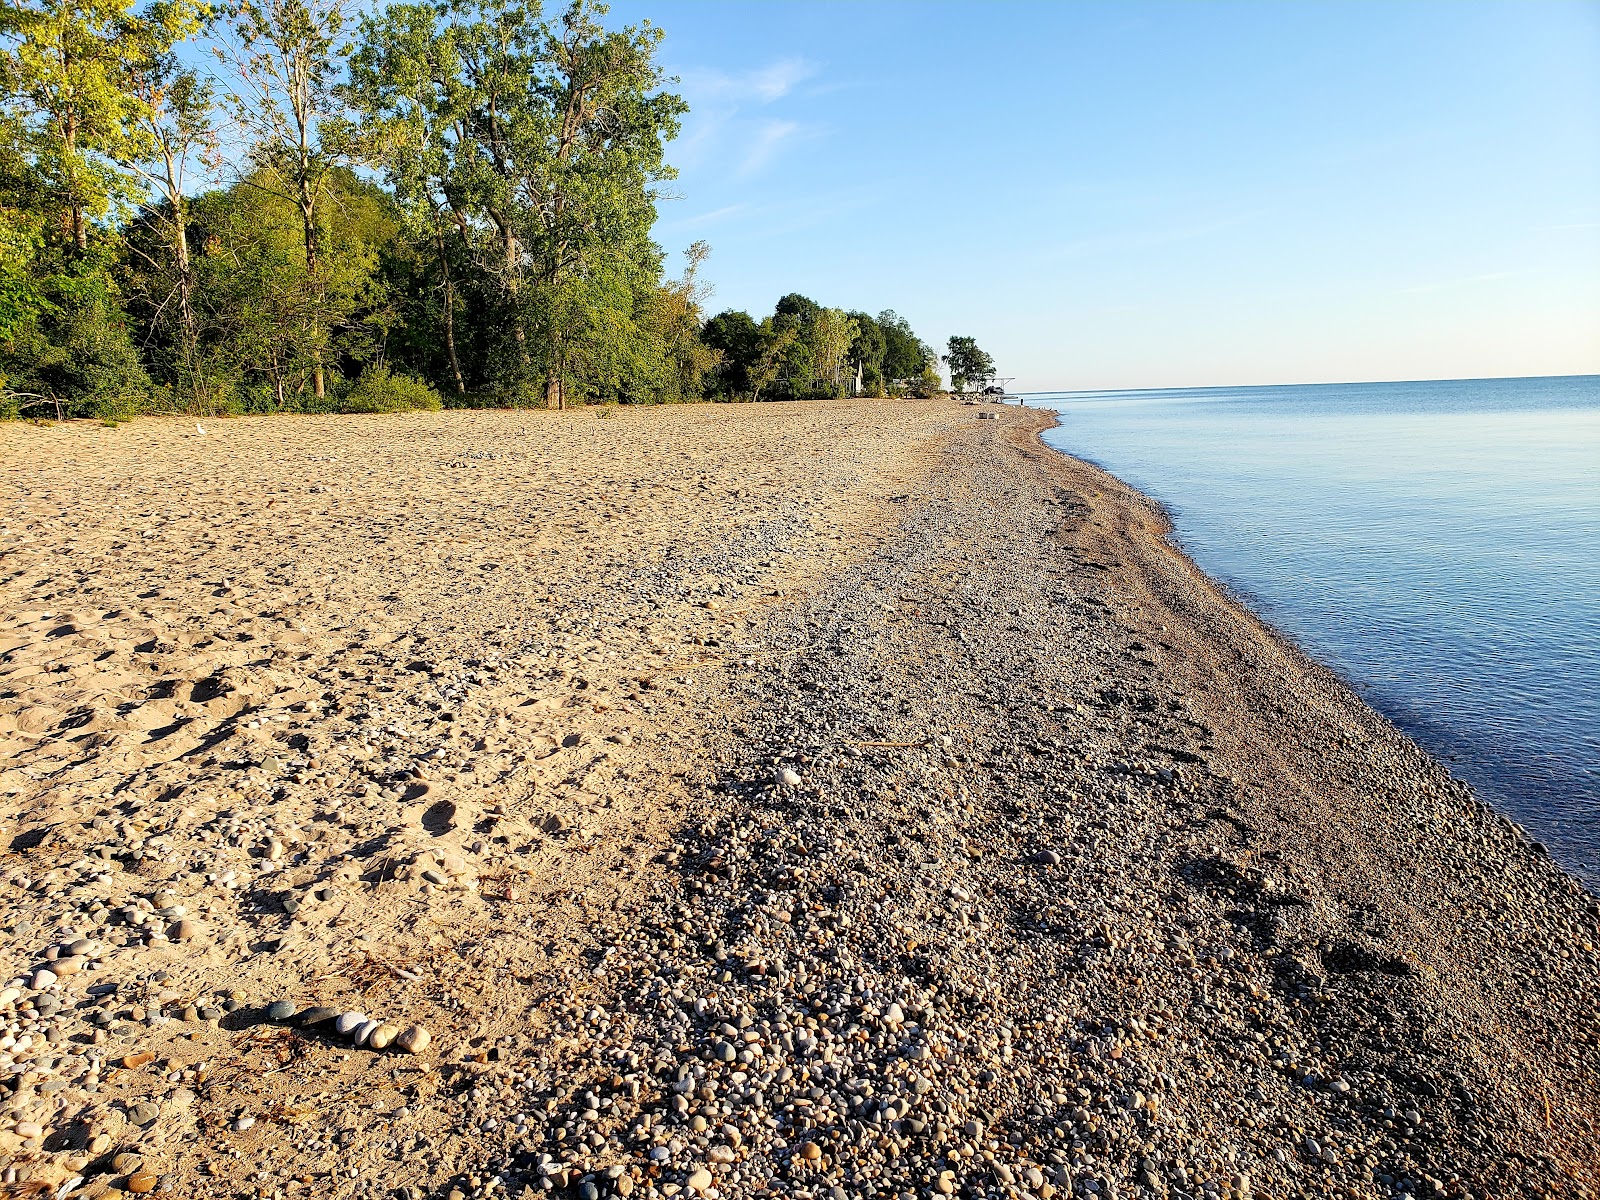 Fotografie cu Lakeport State Beach - locul popular printre cunoscătorii de relaxare